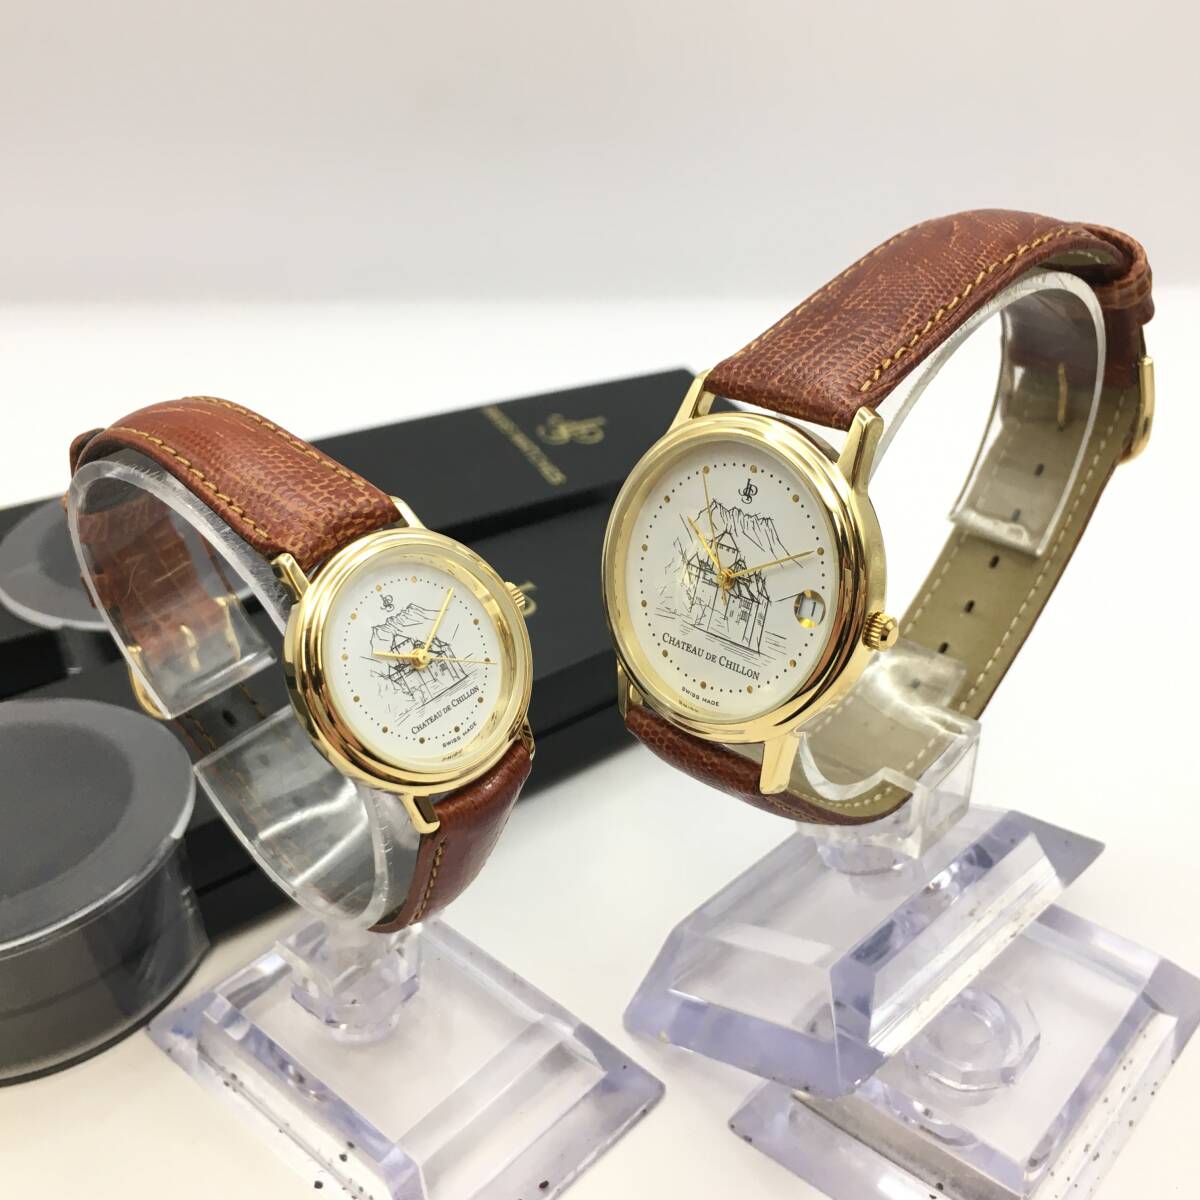 ○C12-114 JPS CHATEAU DE CHILLON シヨン城 3針 メンズ レディース ペア クォーツ 腕時計 レザーベルト 2160/2260の画像1